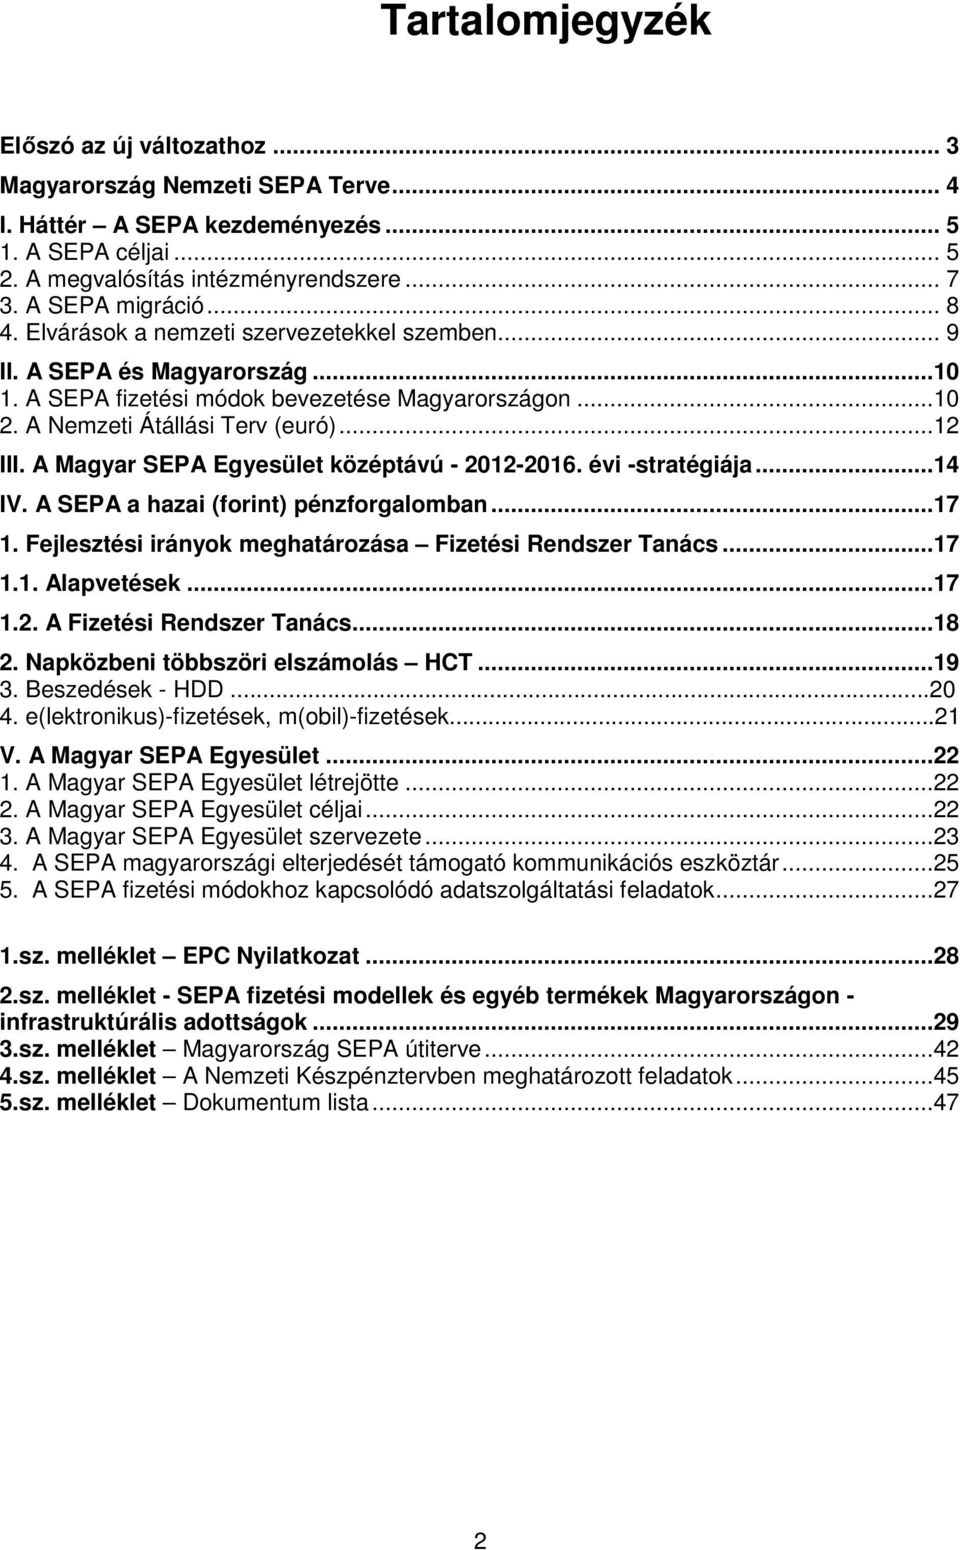 ..12 III. A Magyar SEPA Egyesület középtávú - 2012-2016. évi -stratégiája...14 IV. A SEPA a hazai (forint) pénzforgalomban...17 1. Fejlesztési irányok meghatározása Fizetési Rendszer Tanács...17 1.1. Alapvetések.